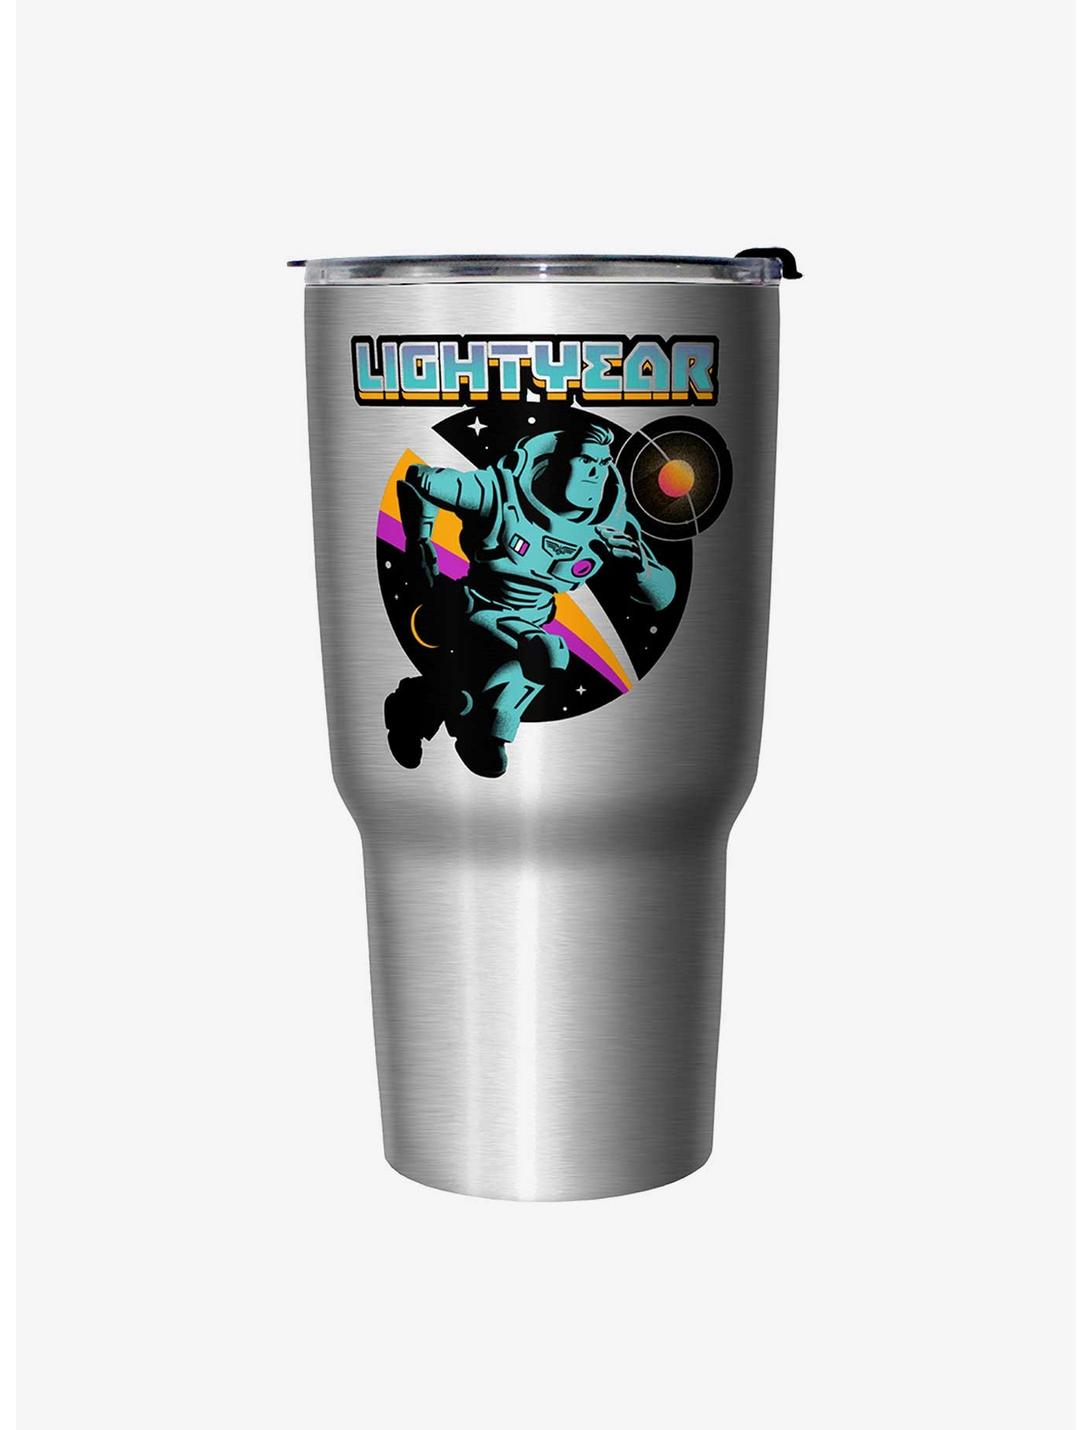 buzz lightyear travel mug